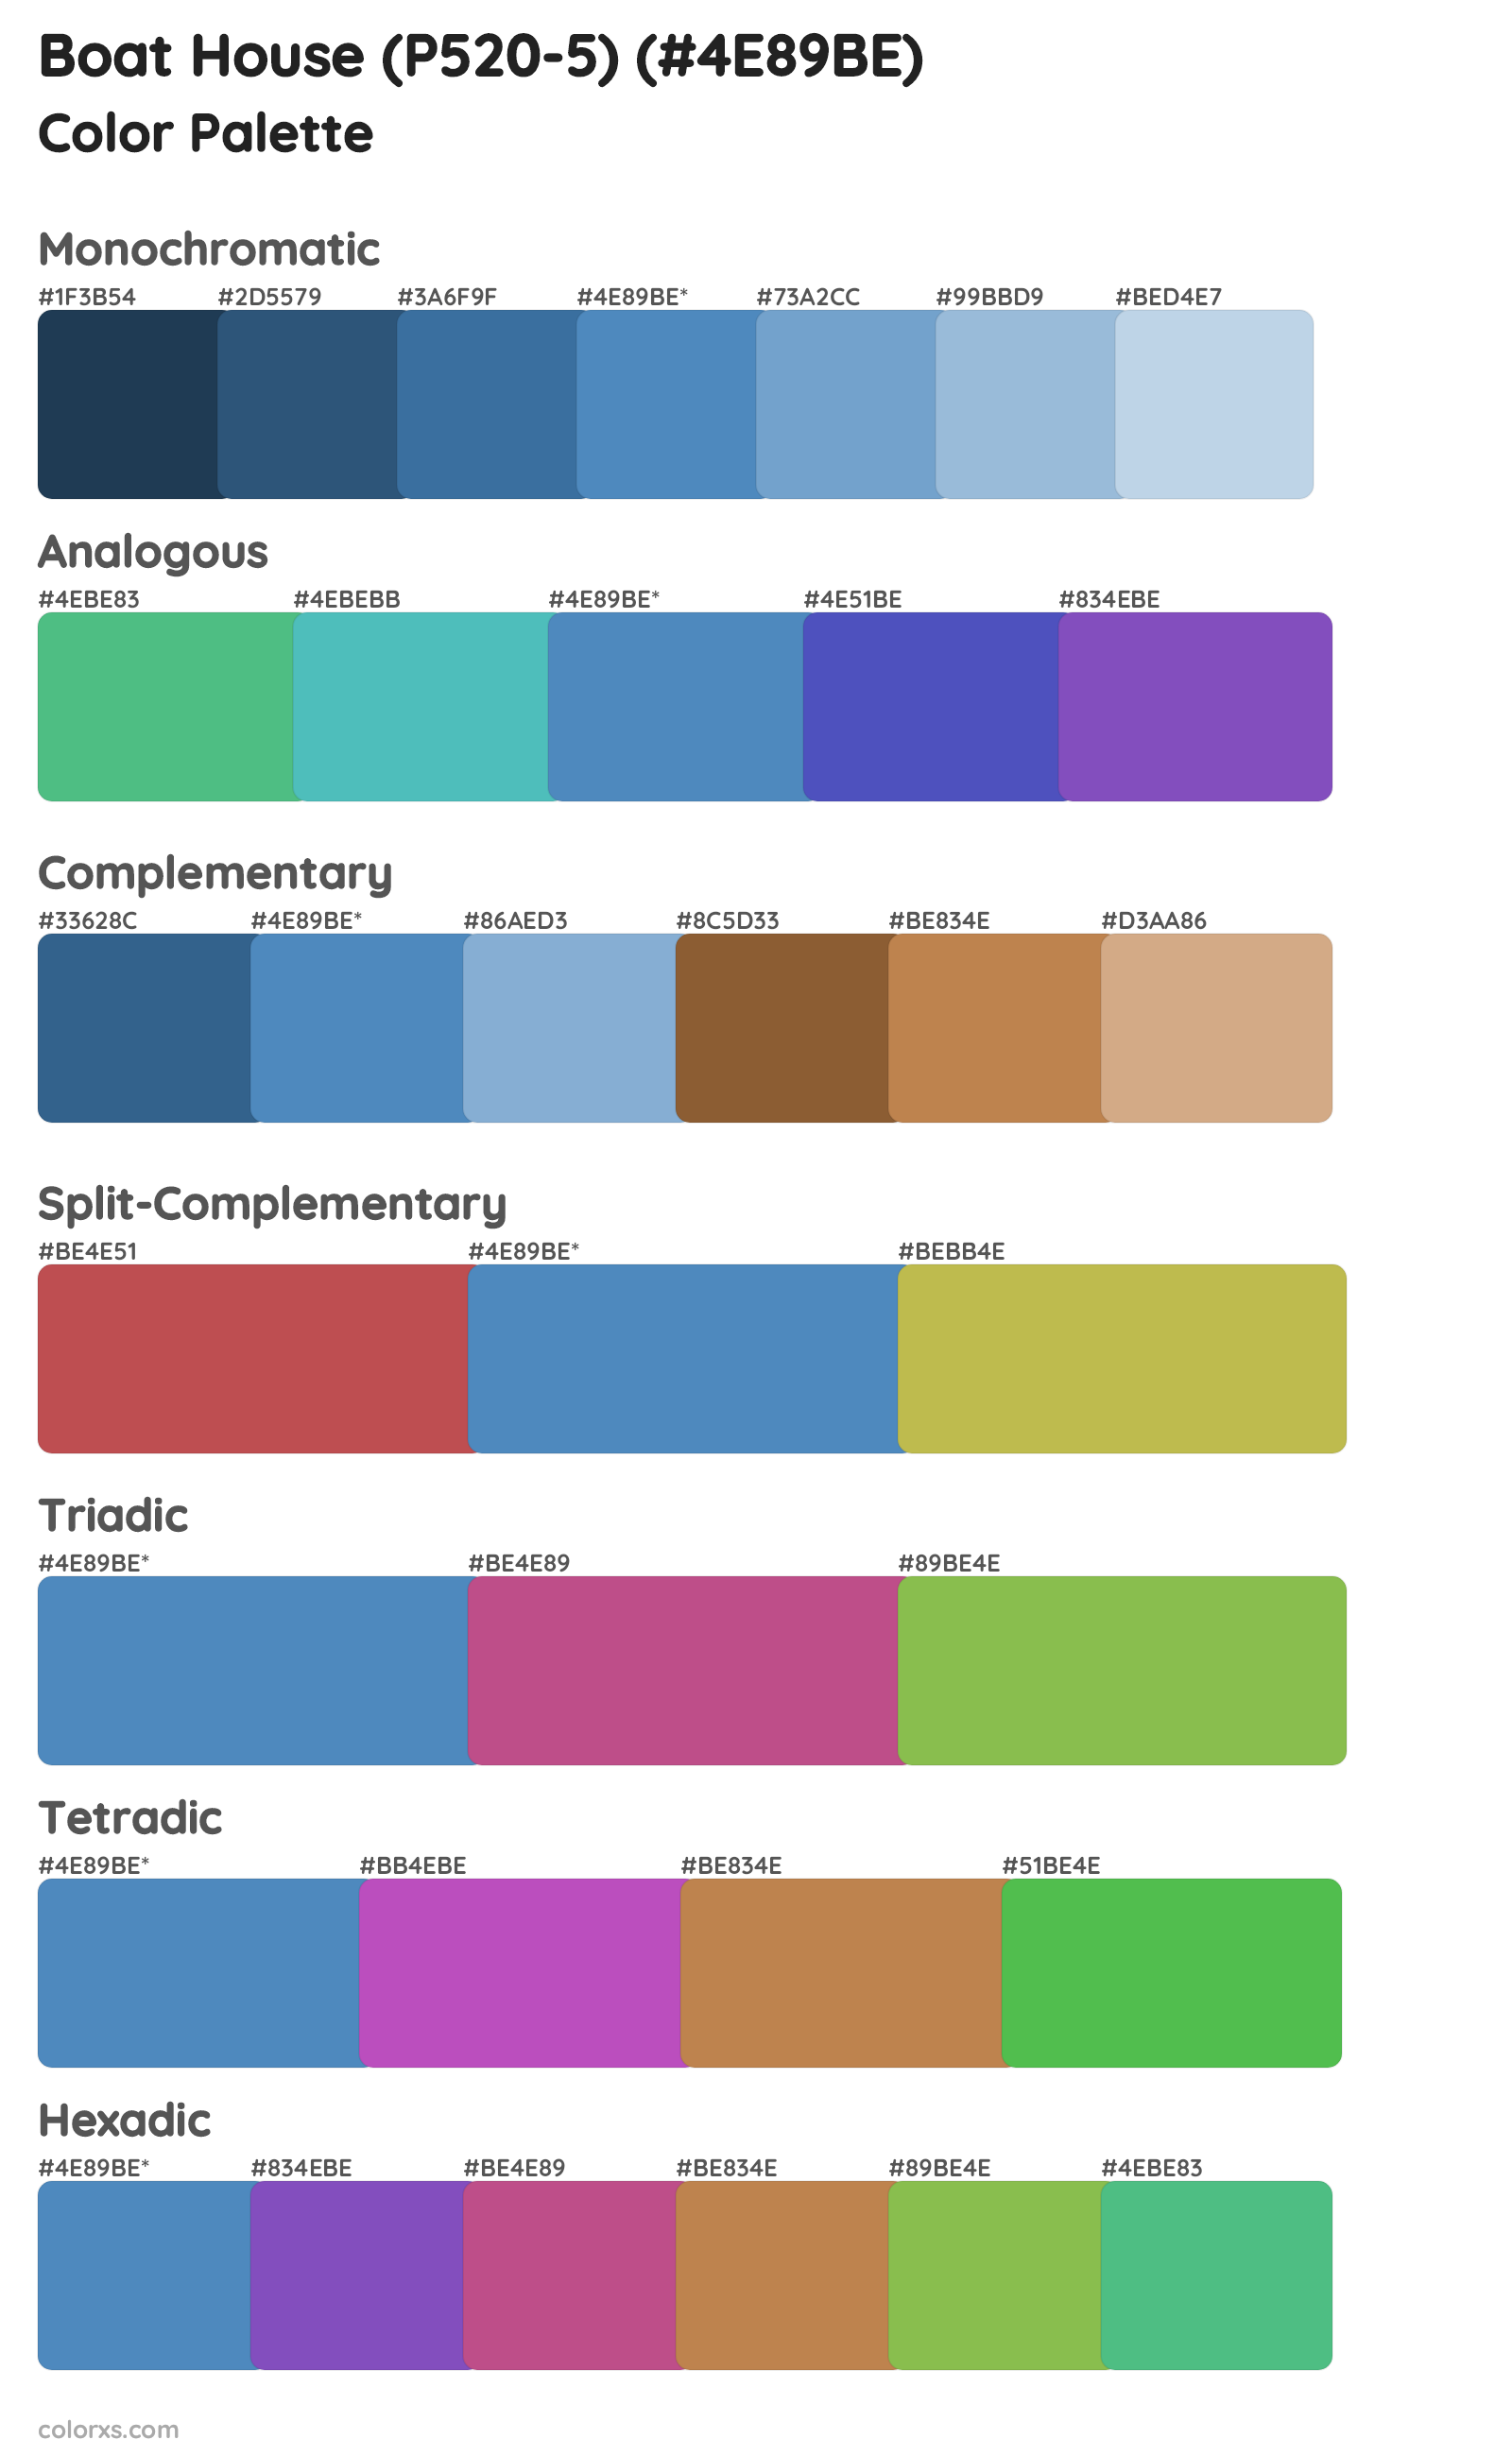 Boat House (P520-5) Color Scheme Palettes